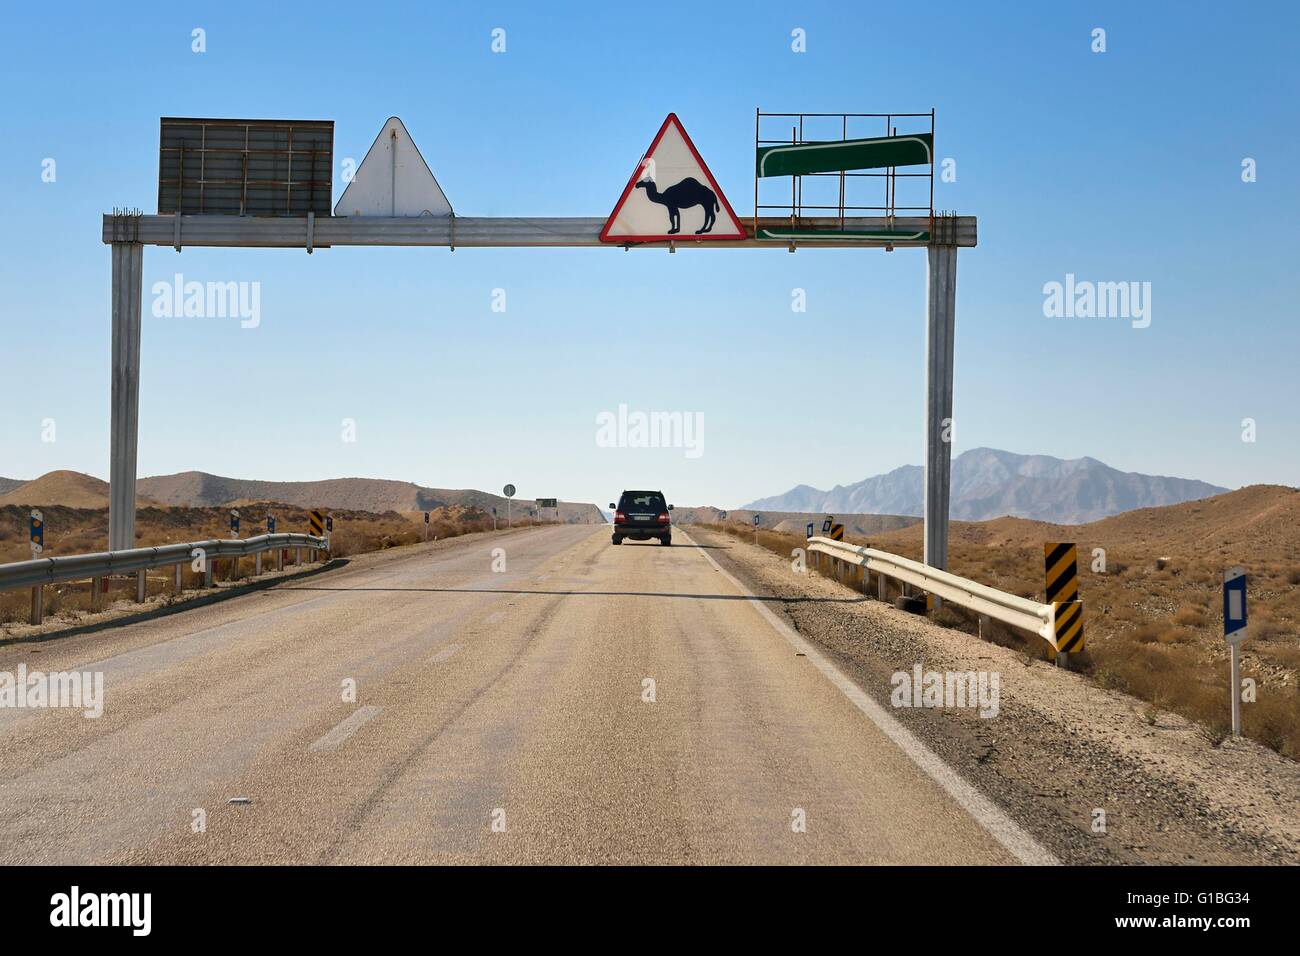 Iran, Yazd Provinz, Dasht-e Kavir Wüste, Rabat-e-Posht-e-Badam, Camel Crossing Schild, Kamele sind verantwortlich für viele Unfälle im Straßenverkehr, vor allem nachts Stockfoto